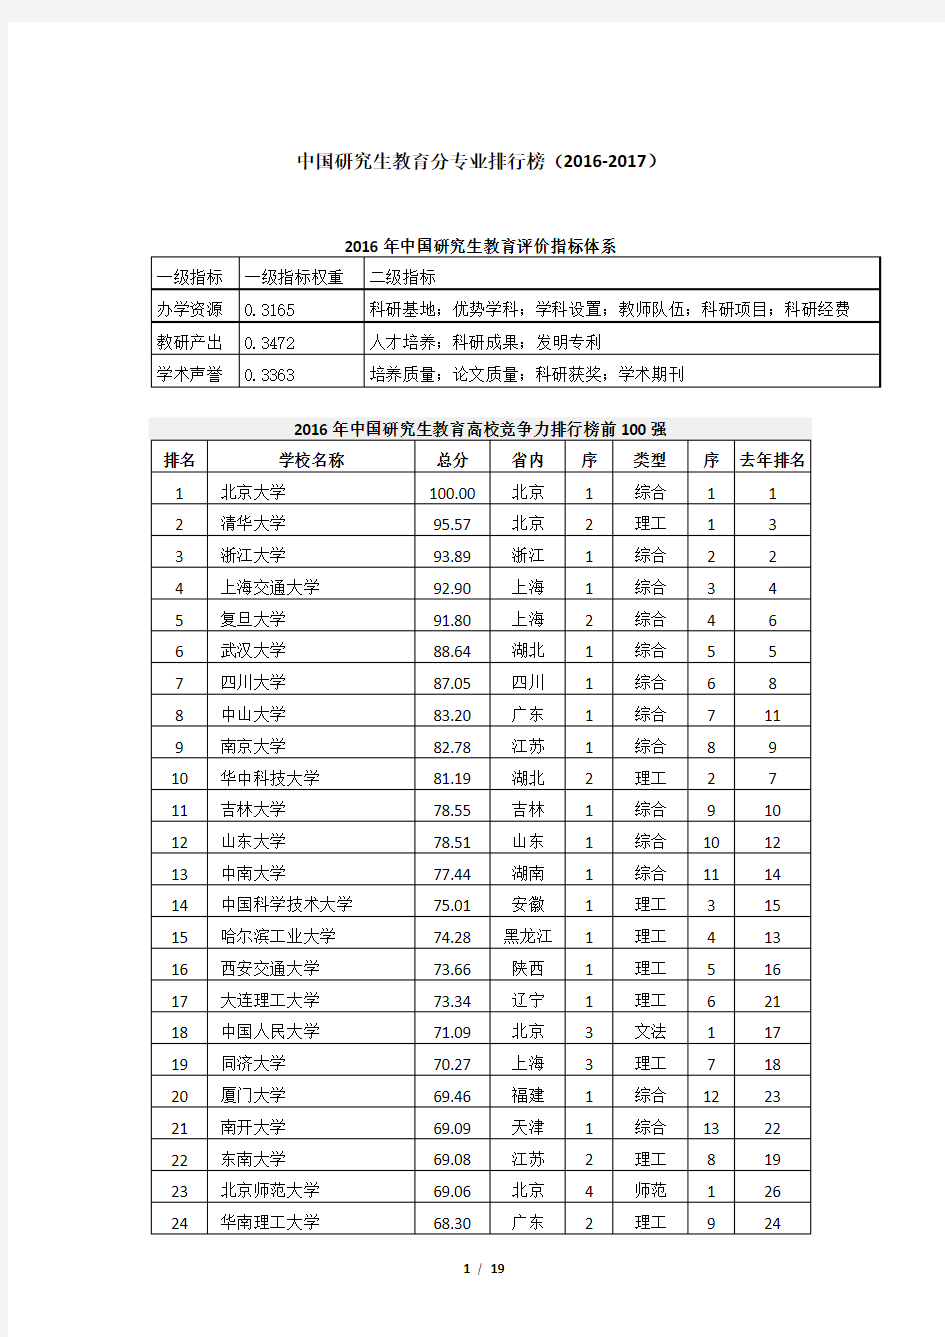 中国研究生教育分专业排行榜(2016-2017)